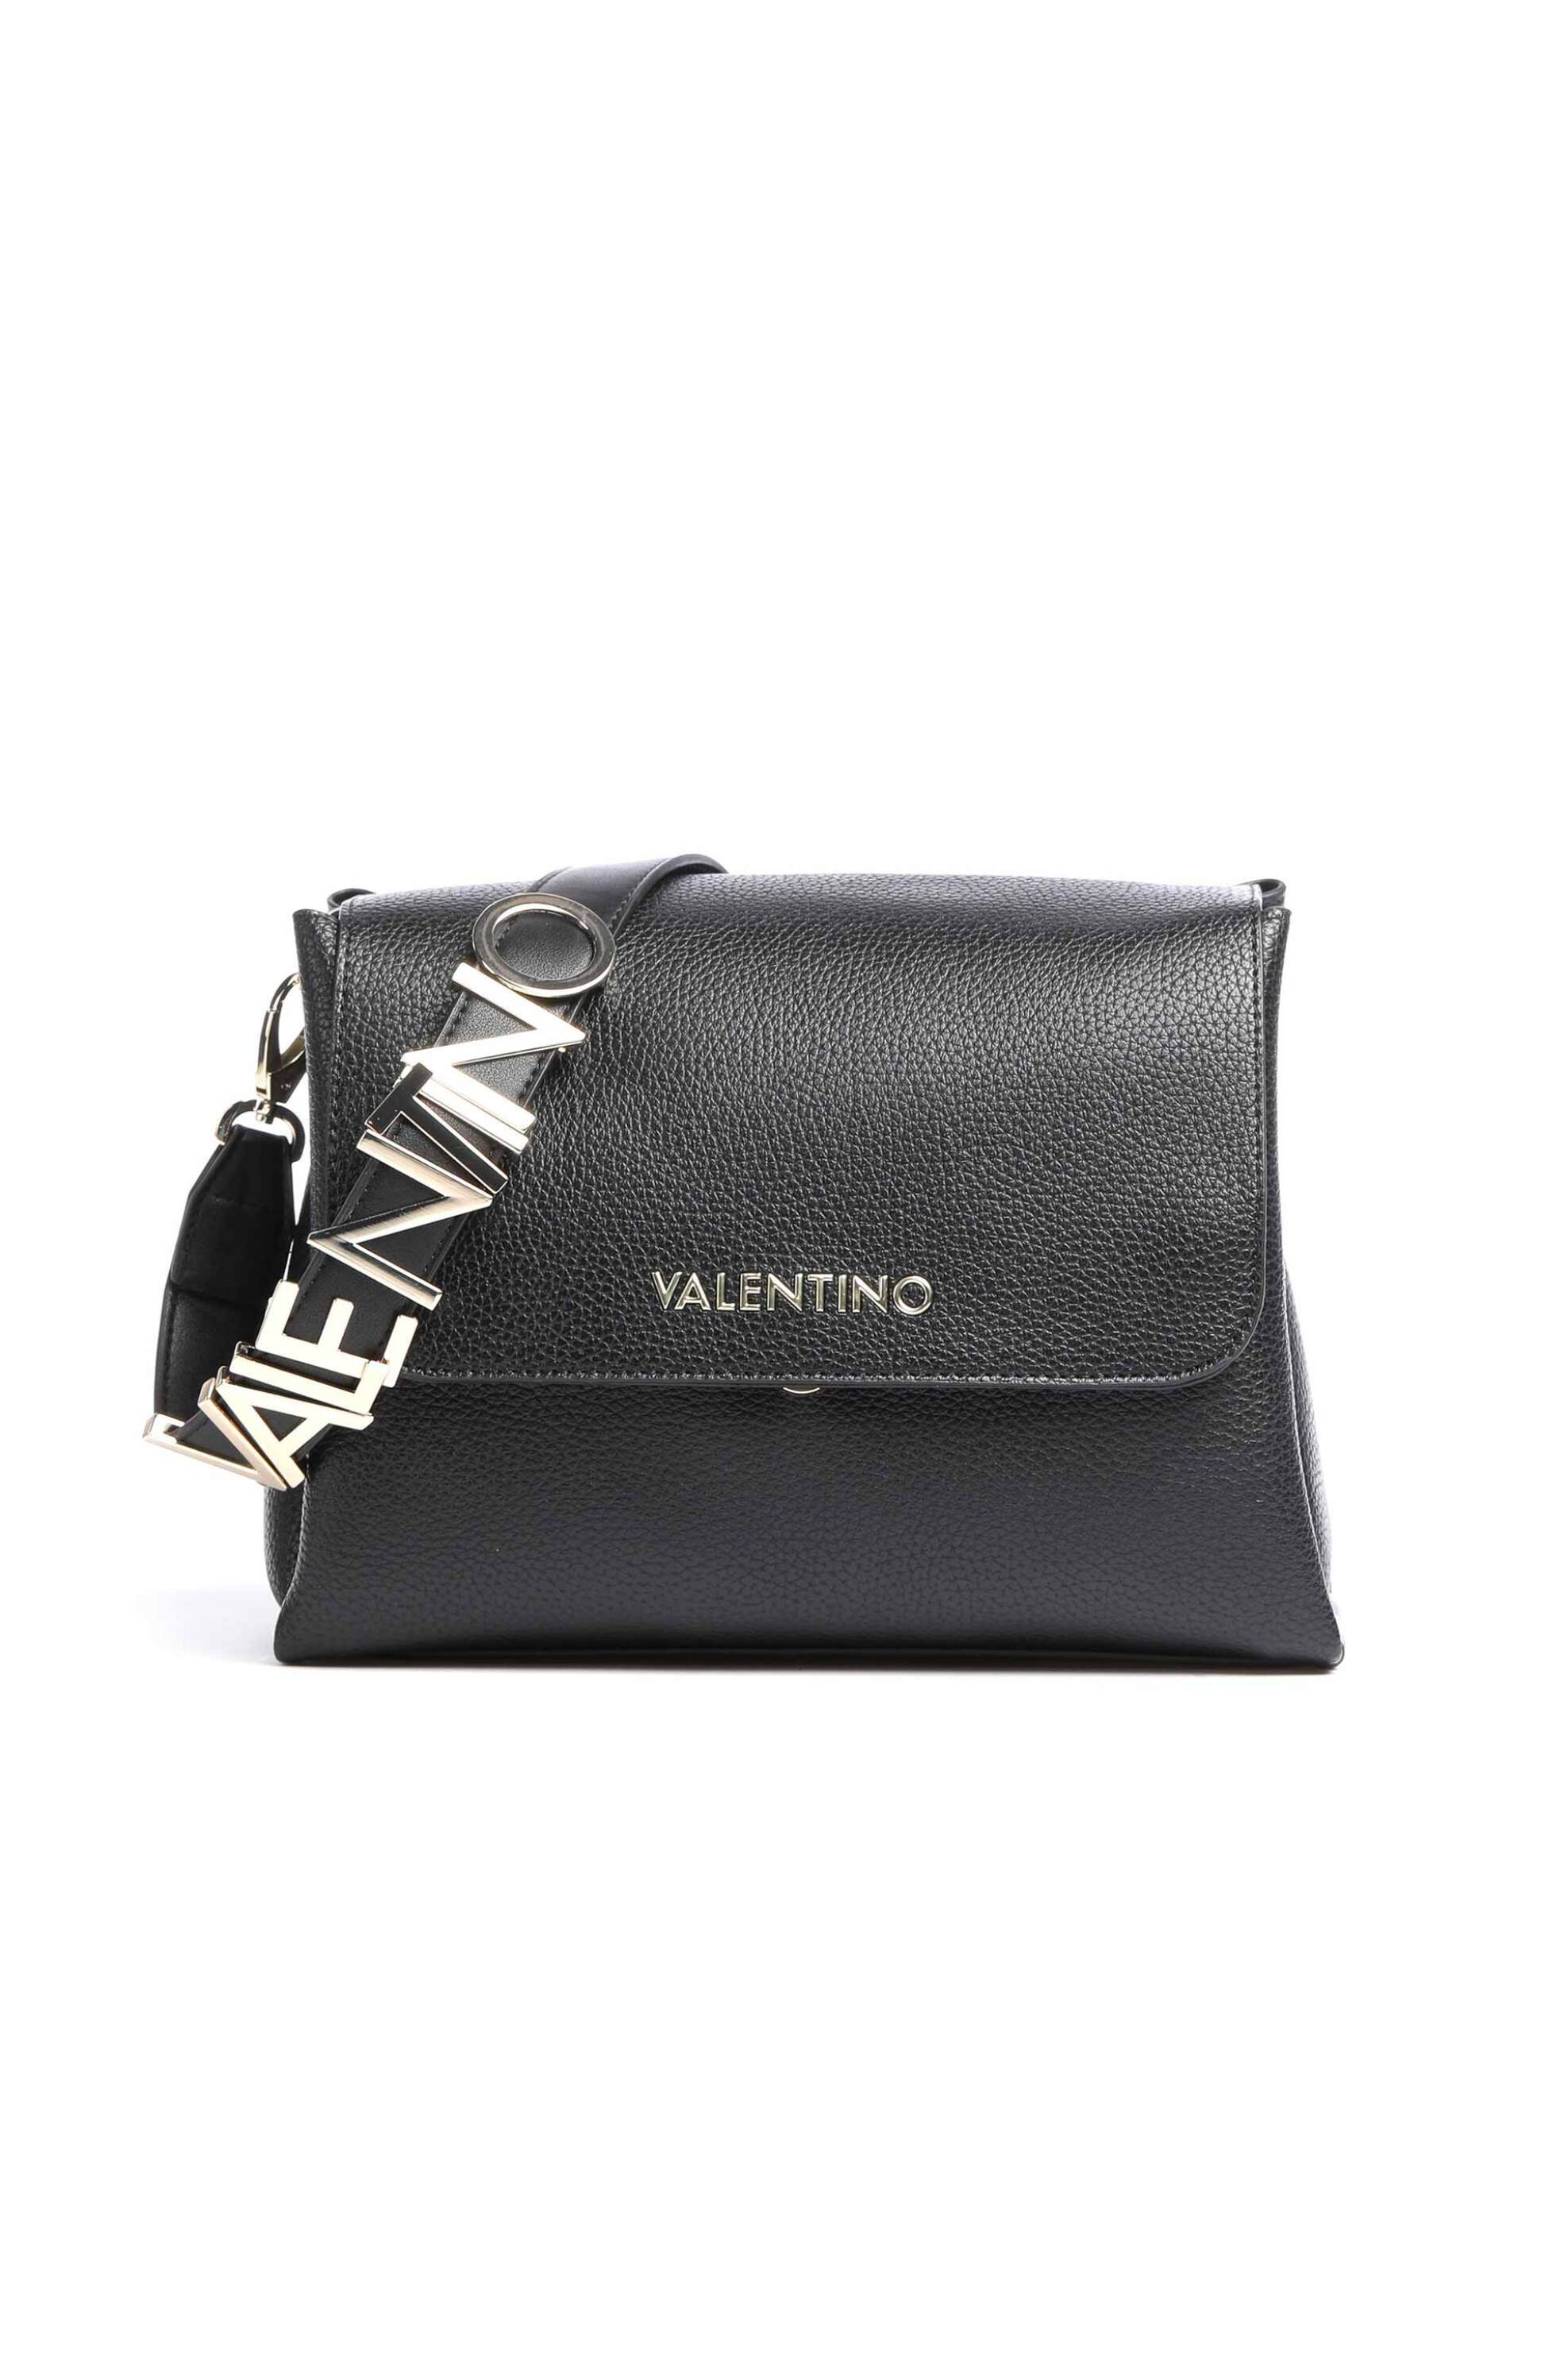 Γυναίκα > ΤΣΑΝΤΕΣ > Τσάντες Ώμου & Shopper Bags Valentino γυναικεία τσάντα ώμου μονόχρωμη με μεταλλικό λογότυπο στο λουρί "Alexia" - 55KVBS5A803/ALE Μαύρο